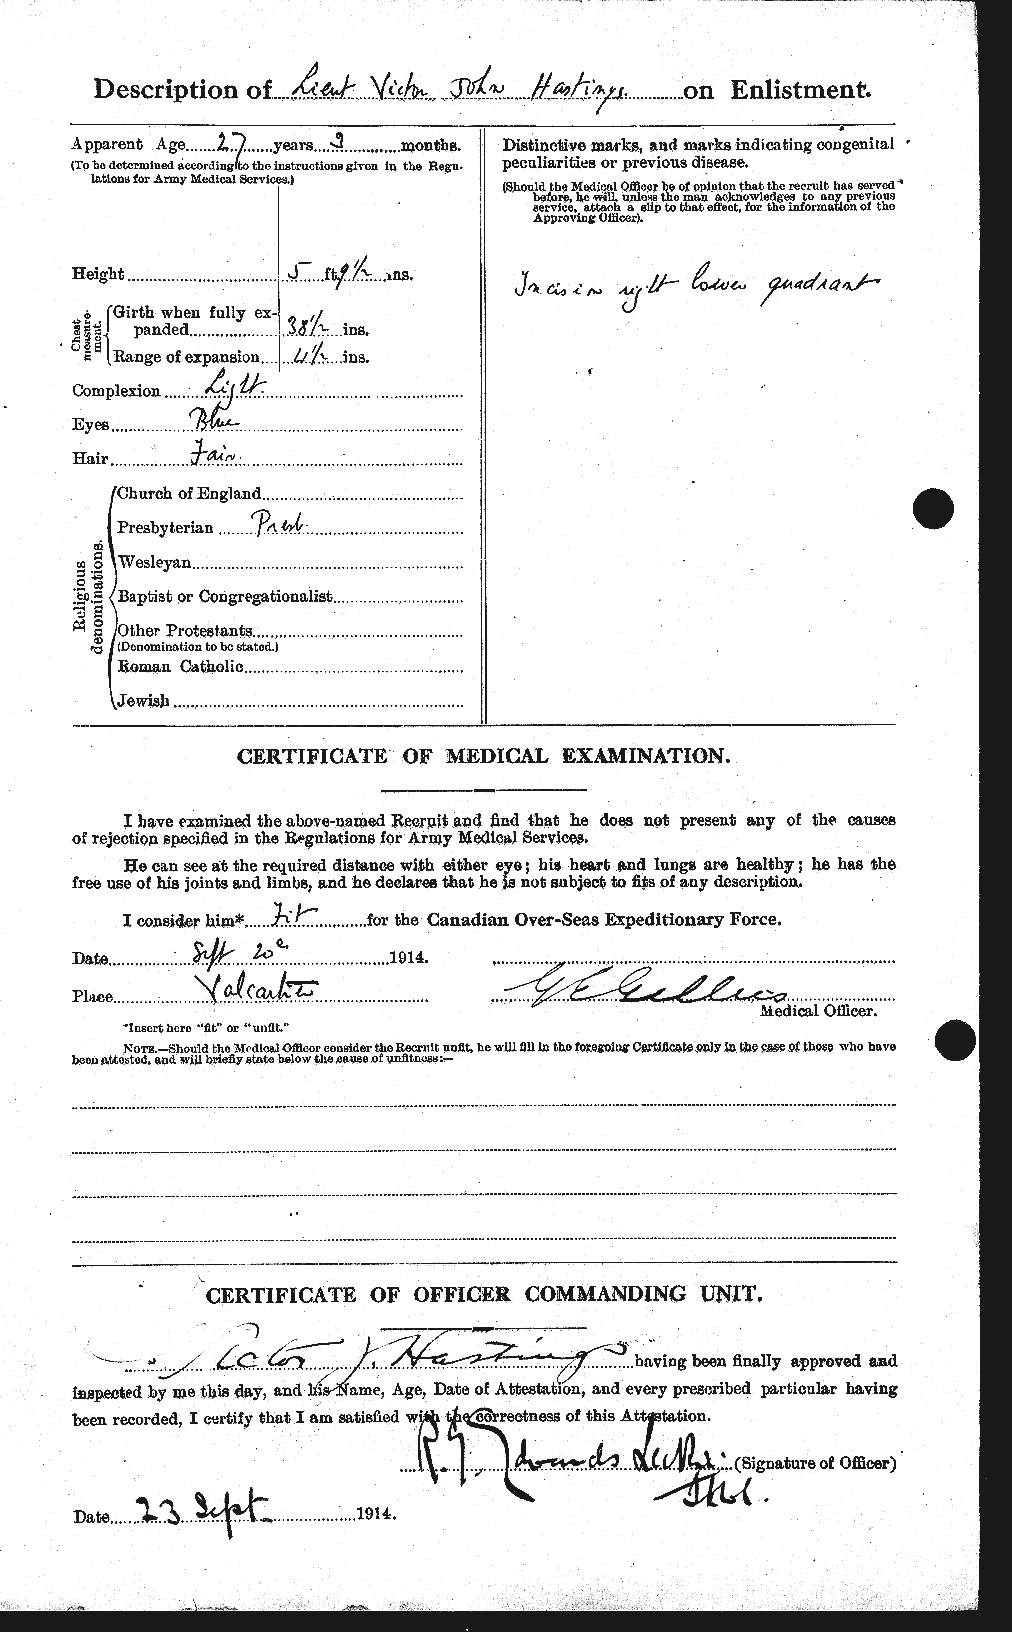 Dossiers du Personnel de la Première Guerre mondiale - CEC 388254b